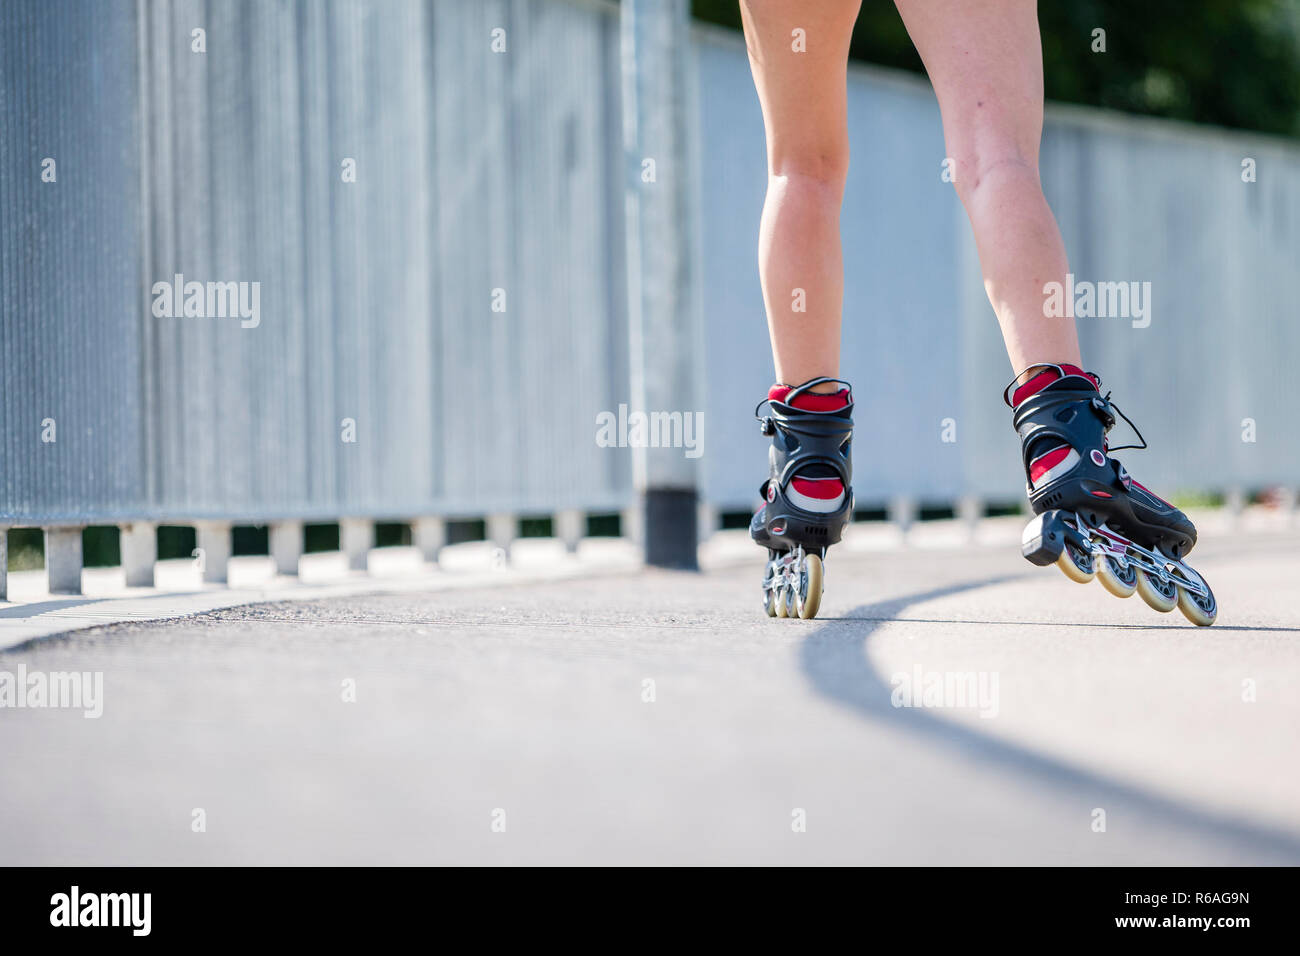 Frau, 20 Jahre, Inline Skating, detail Skates und Beine Stockfoto